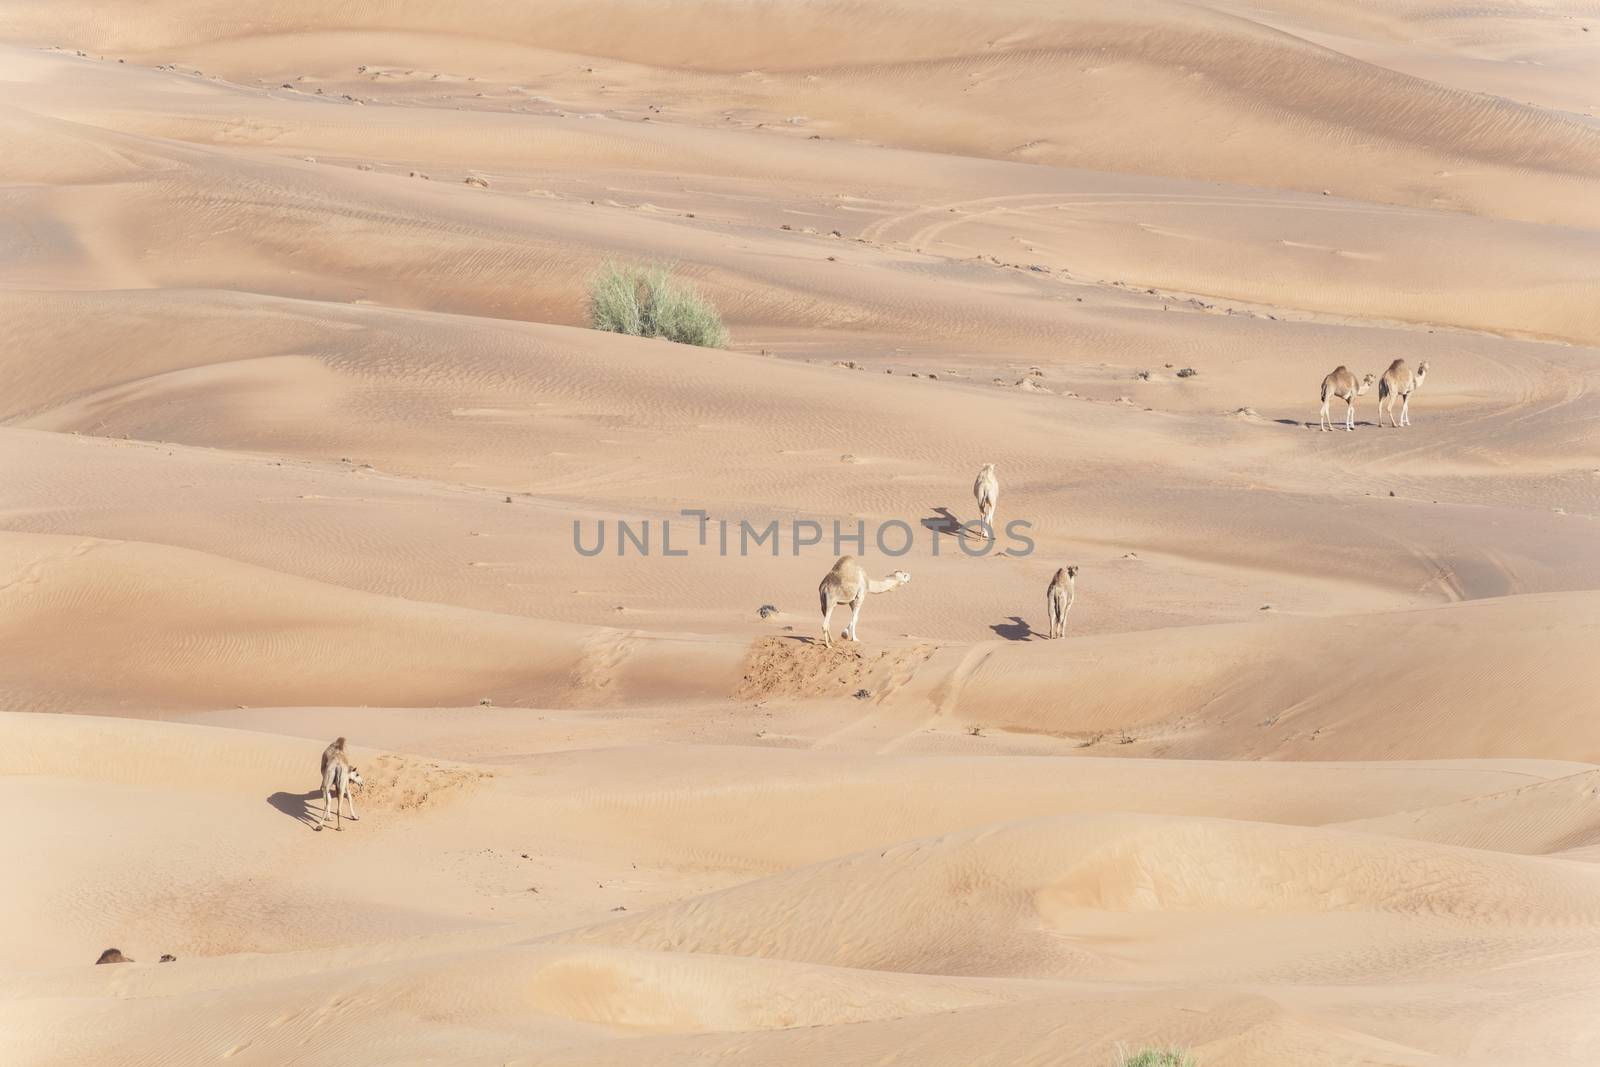 Camel caravan crossing red sand dunes, Desert of UAE by GABIS